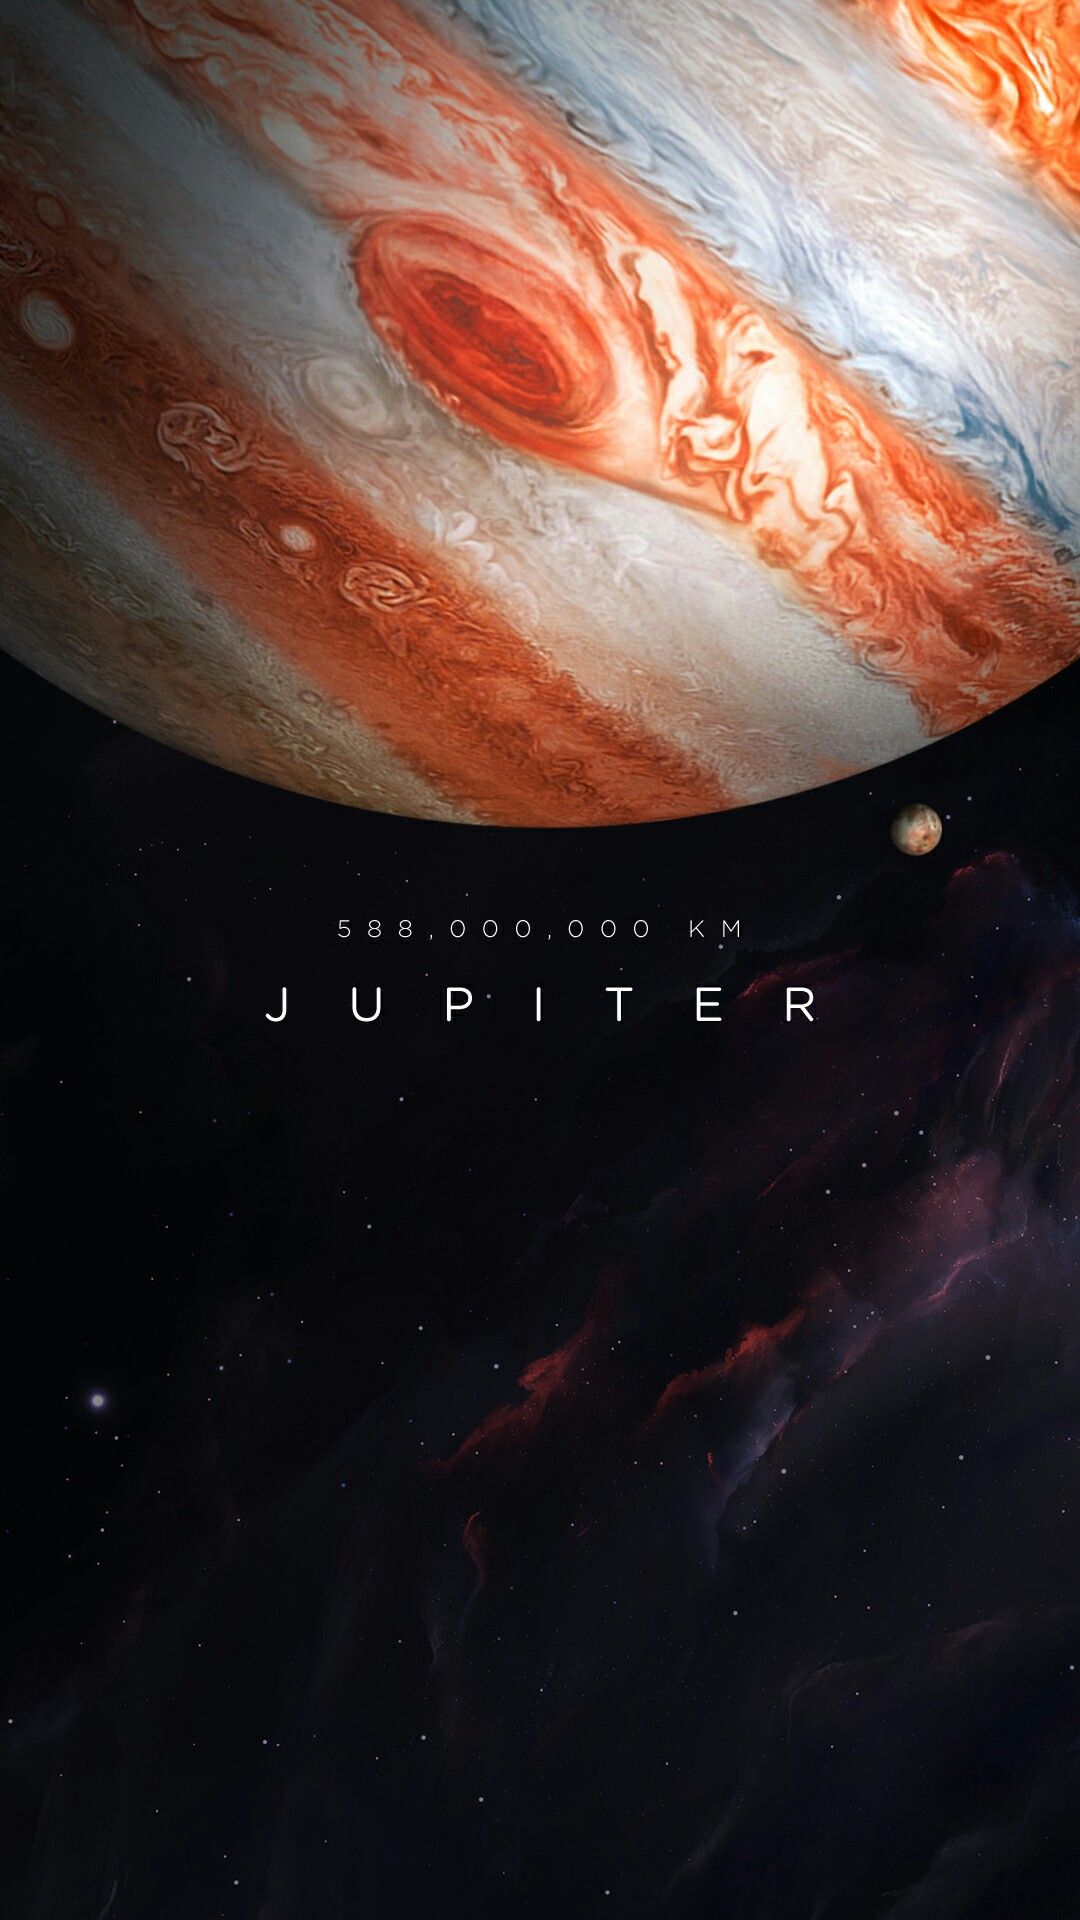 1080x1920 Юпитер Обои и изображение планеты - Планета Обои Телефон - 564x10...